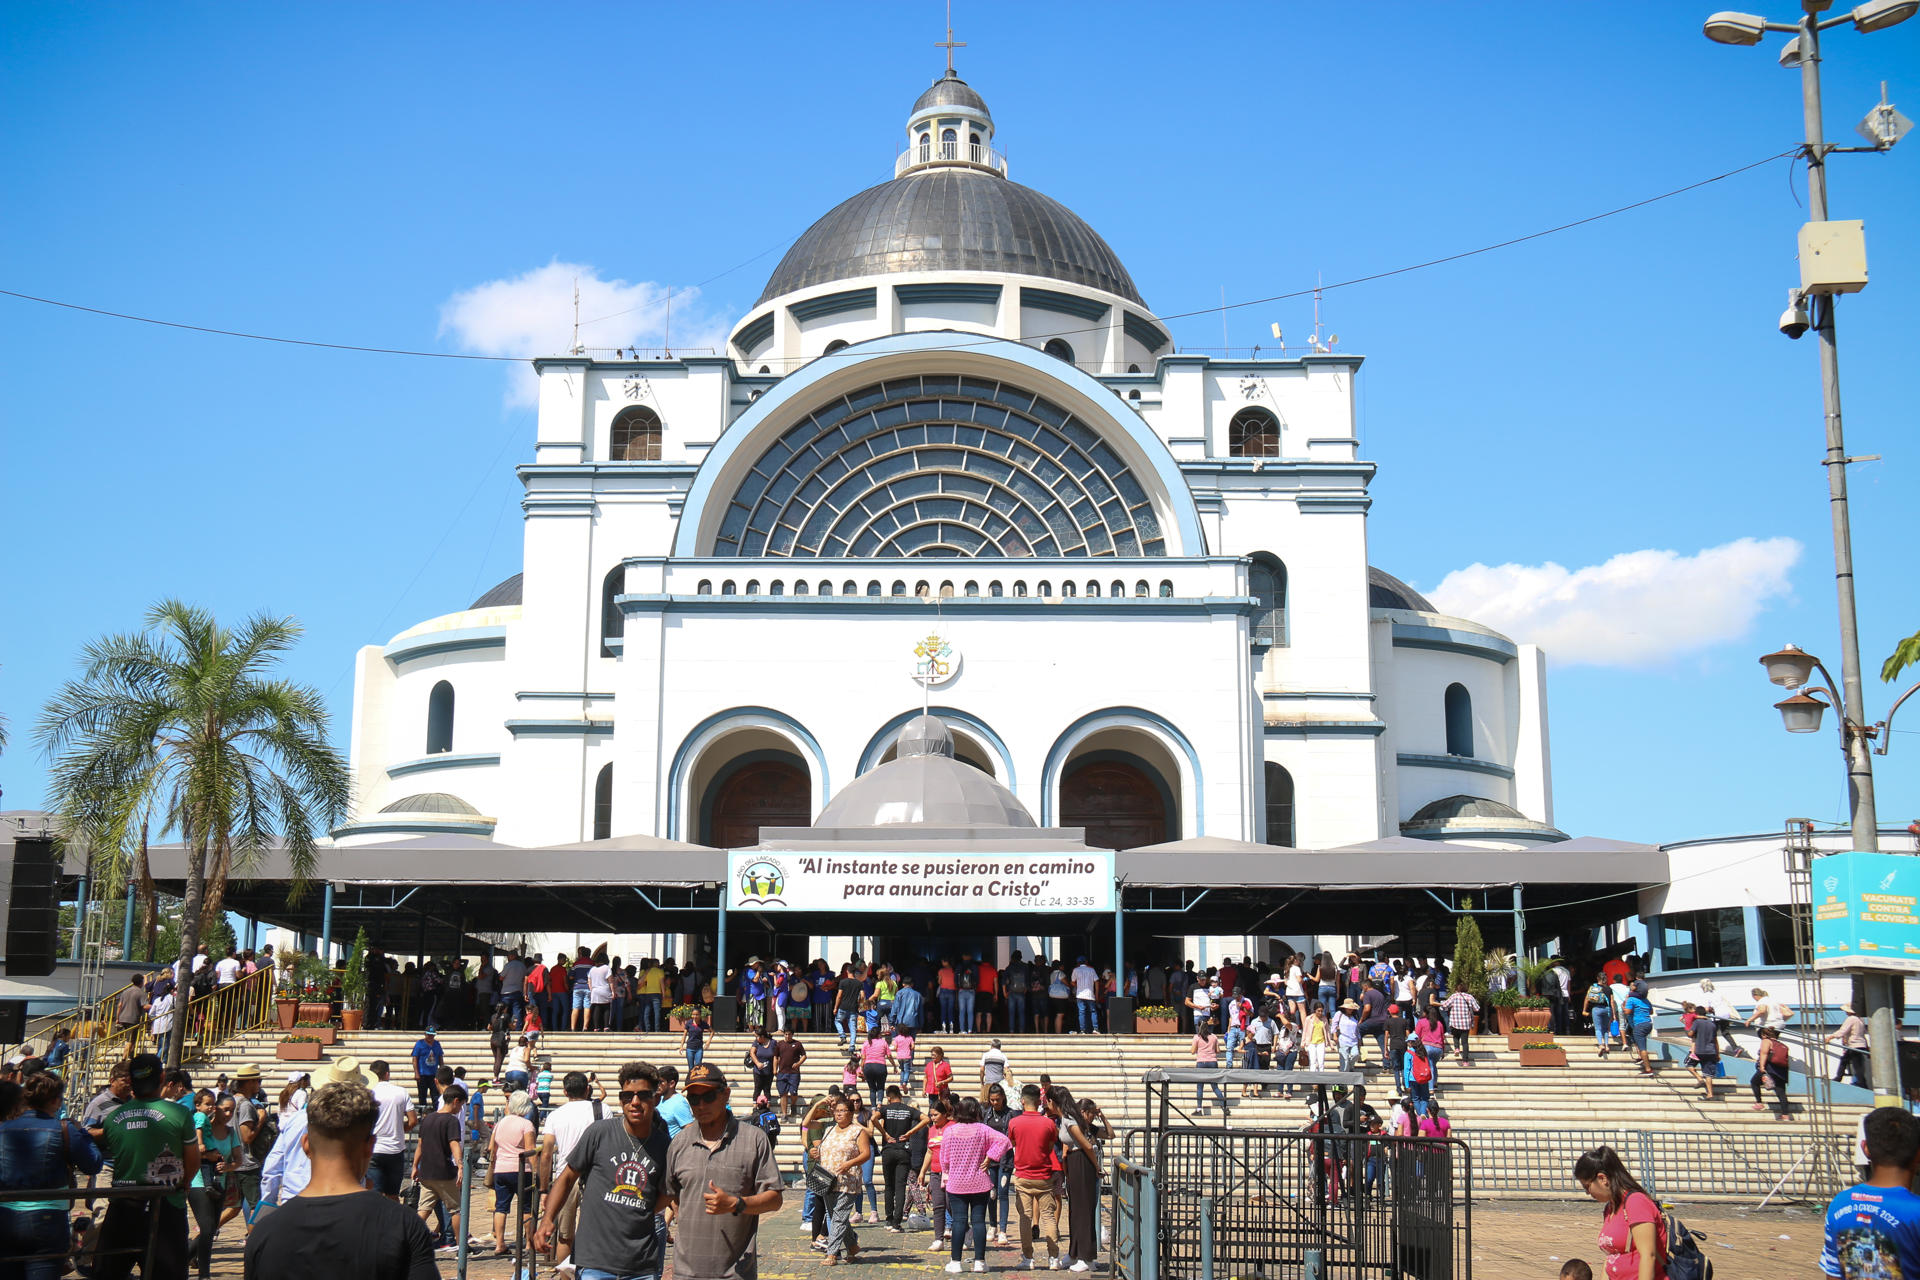 Paraguayan Catholics meet again to venerate the Virgin of Caacupé